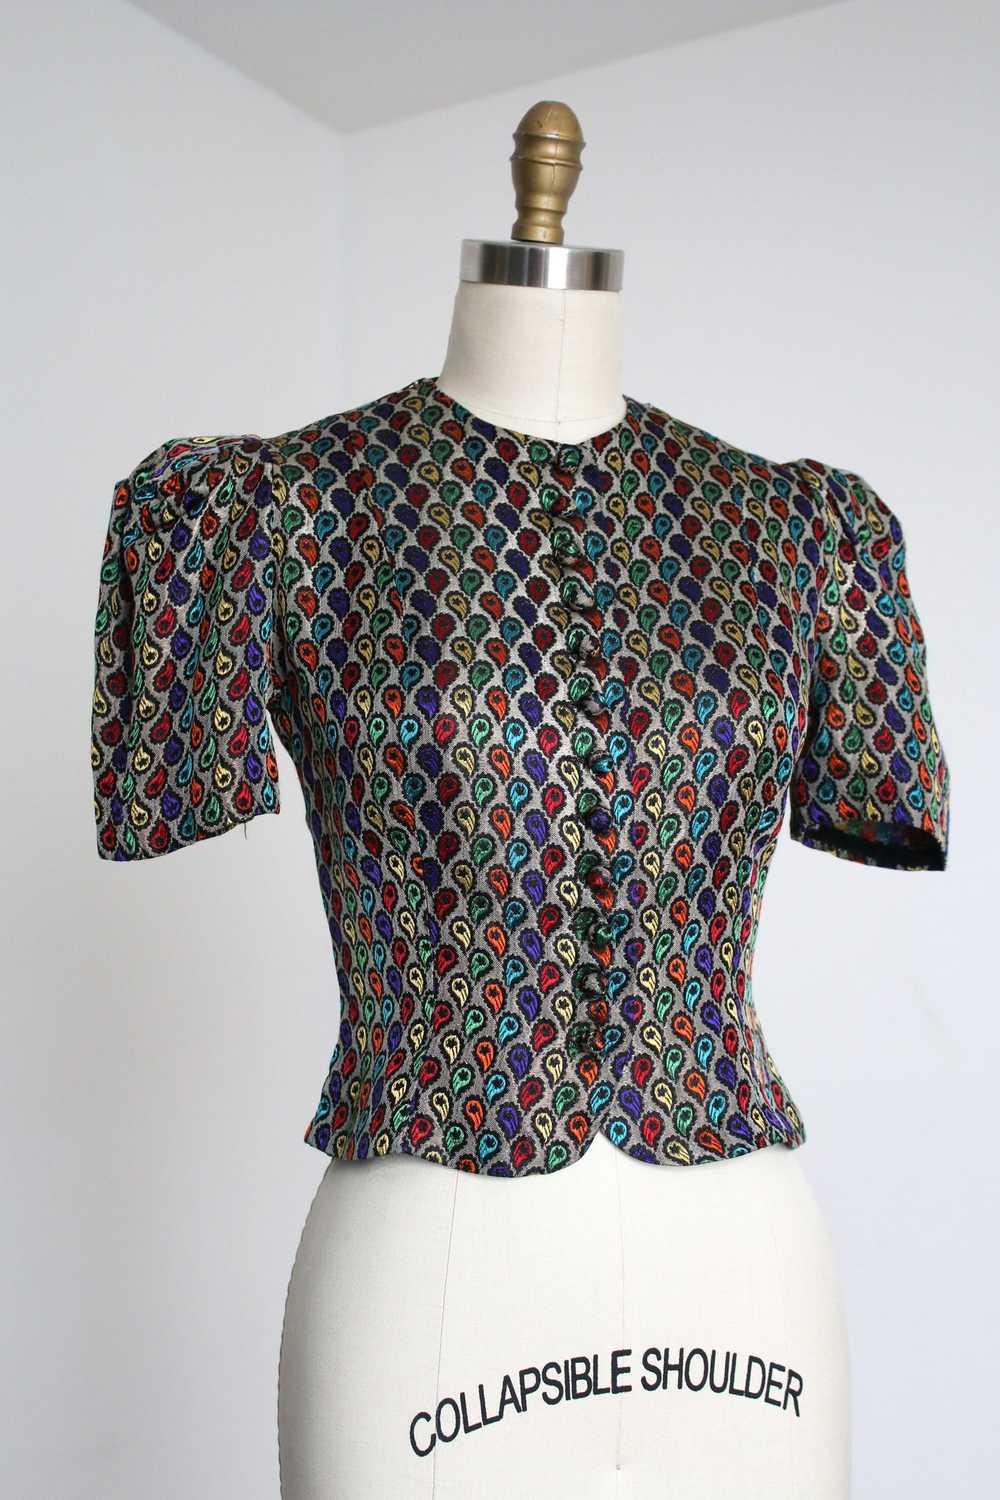 vintage 1930s metallic lamé blouse {s} - image 1